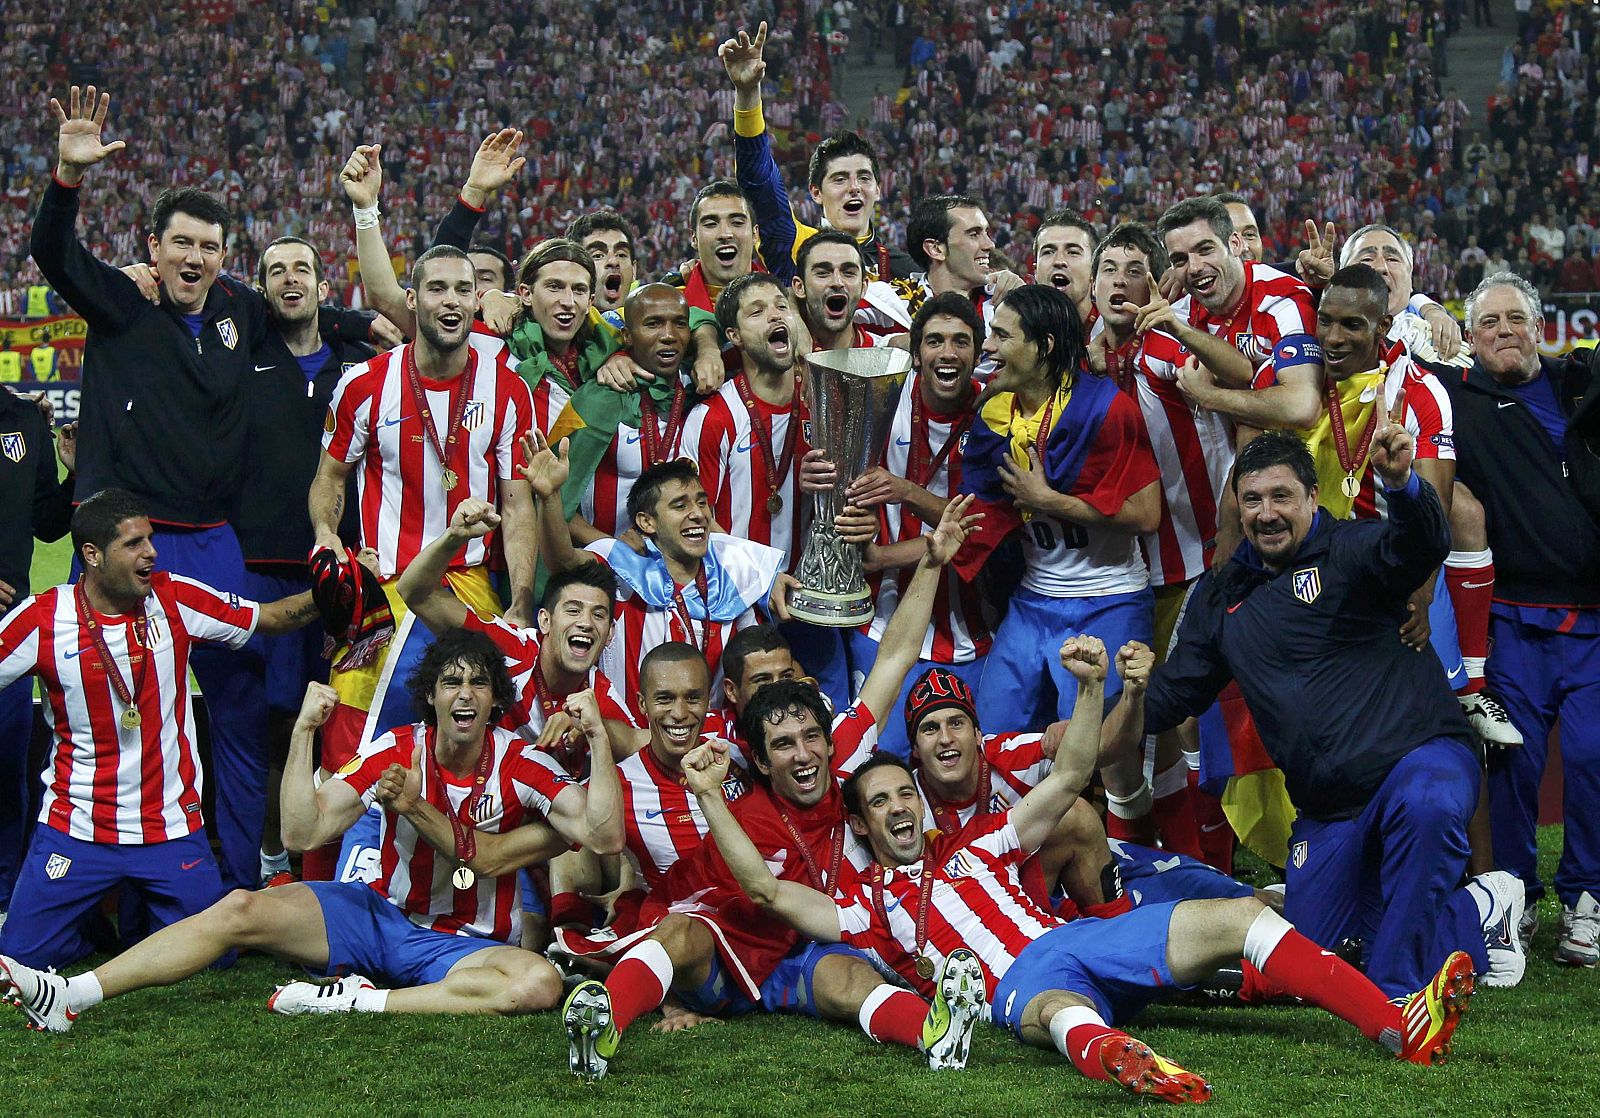 Los jugadores del Atlético de Madrid celebran el título logrado en Bucarest frente al Athletic Club.